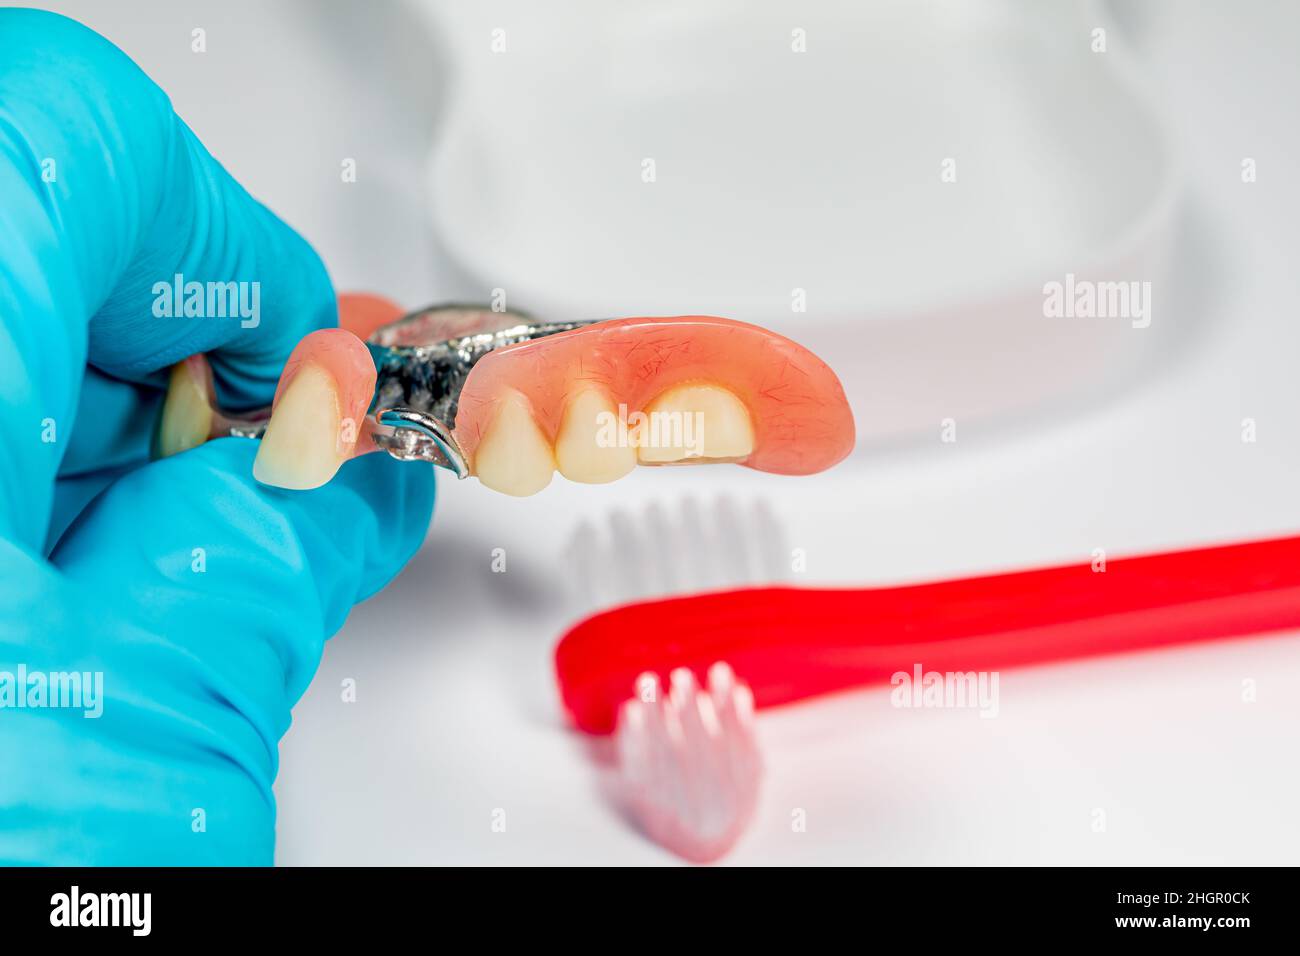 Prothèse partielle et brosse à dents.Nettoyage des prothèses dentaires, santé bucco-dentaire, examen dentaire et nettoyage des dents concept Banque D'Images